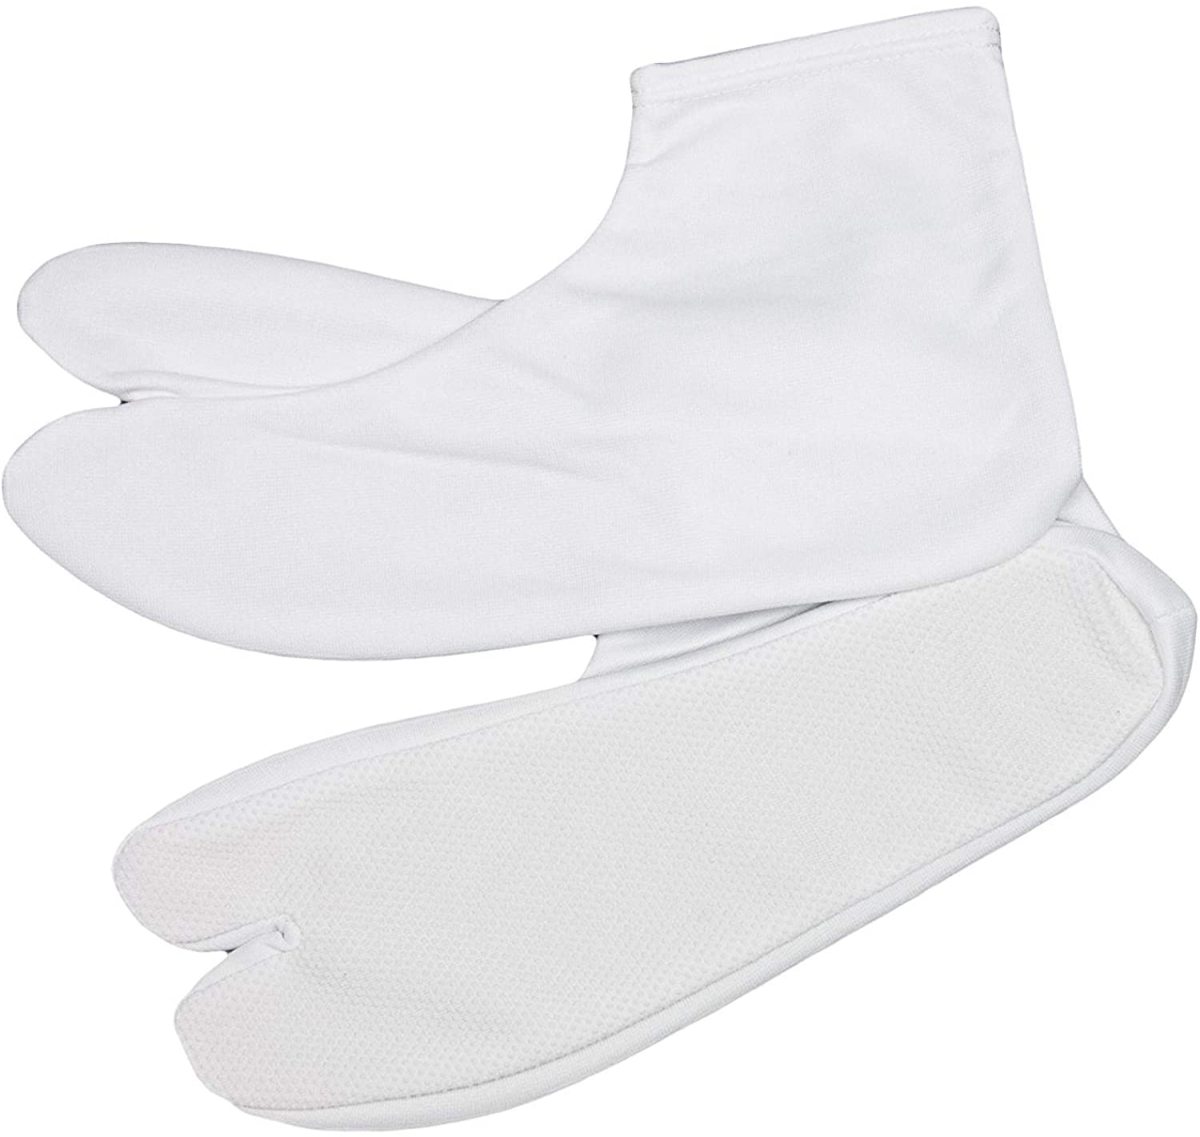 ( белый tabi ) tabi белый предотвращение скольжения мужчина женщина стрейч мужской женский мужчина носки праздник носки tabi покрытие кимоно 11-28cm(rg)